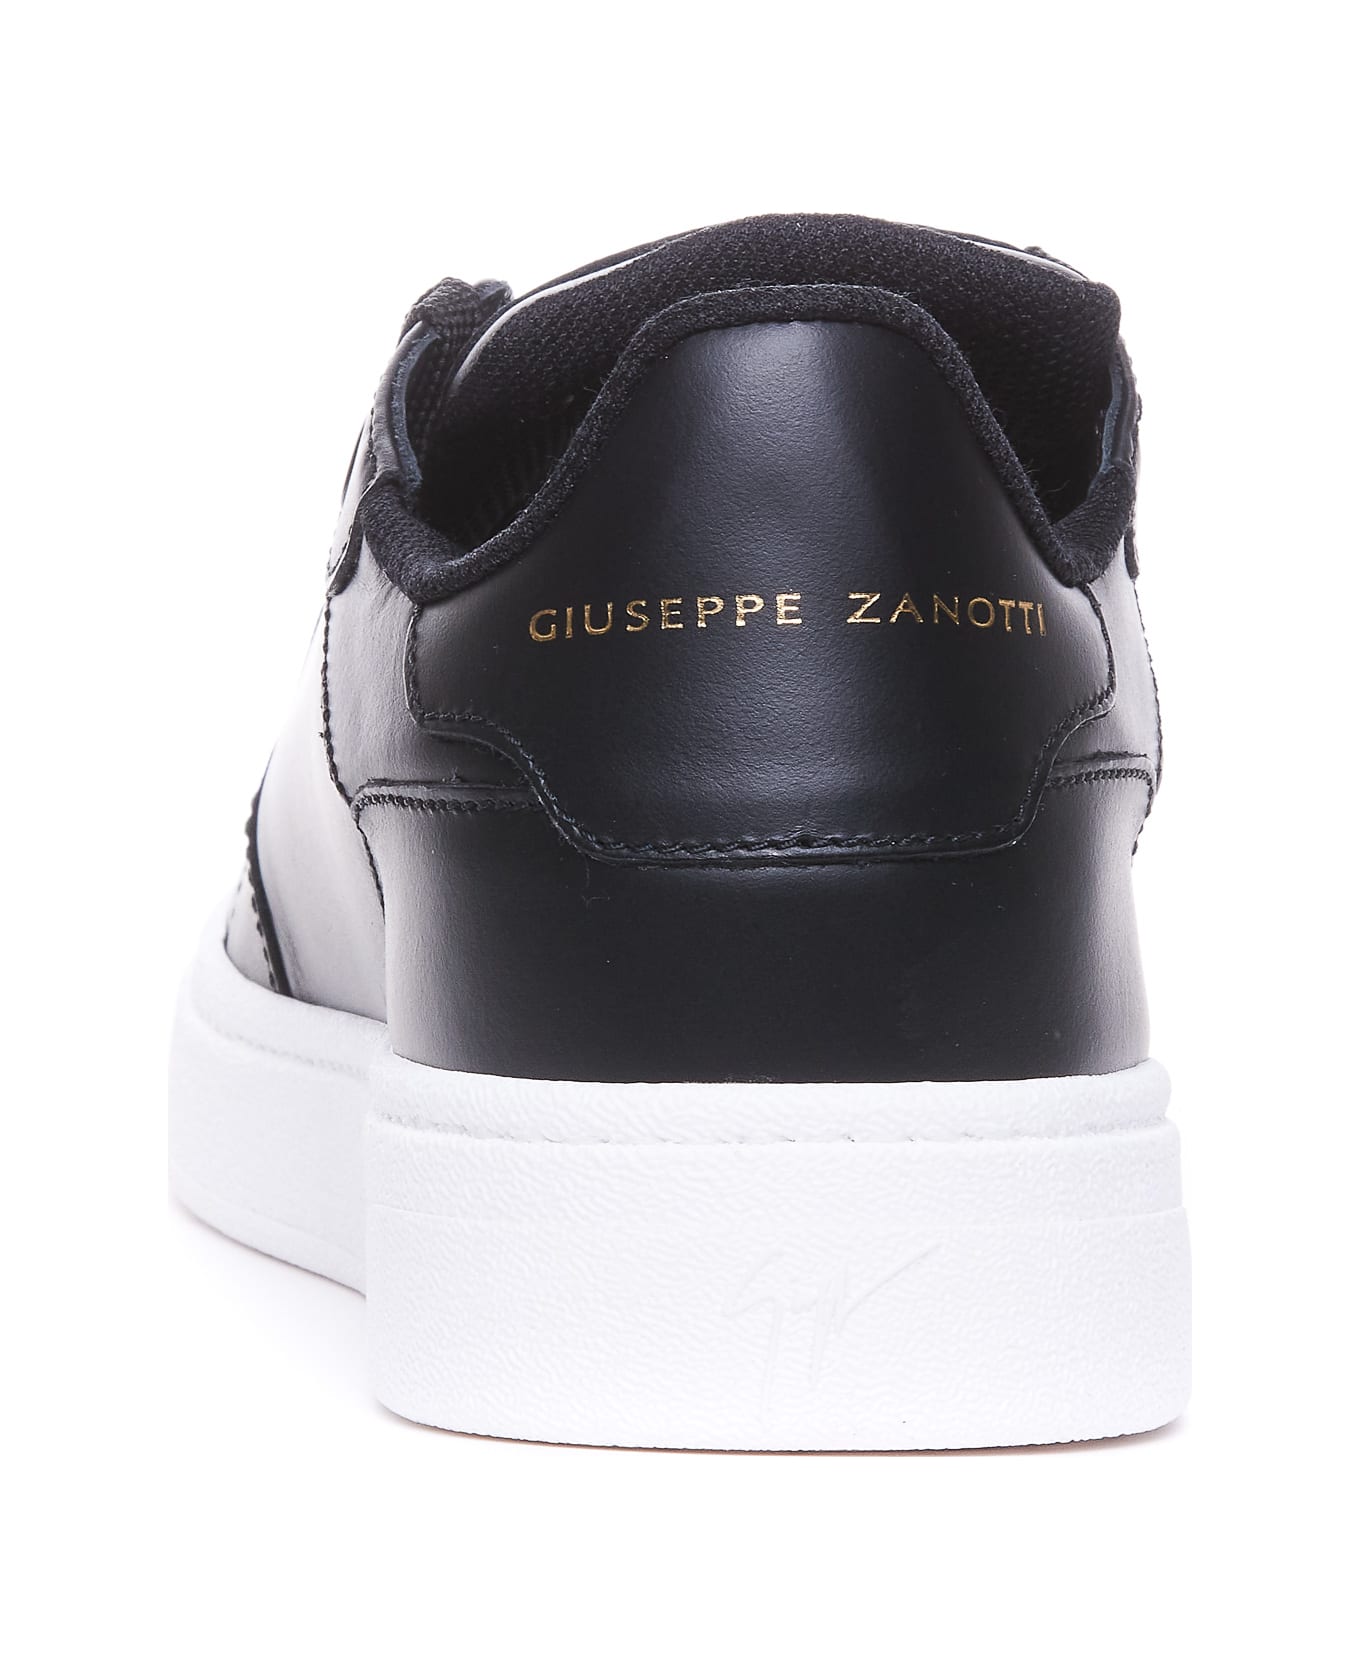 Giuseppe Zanotti Sneakers - Black